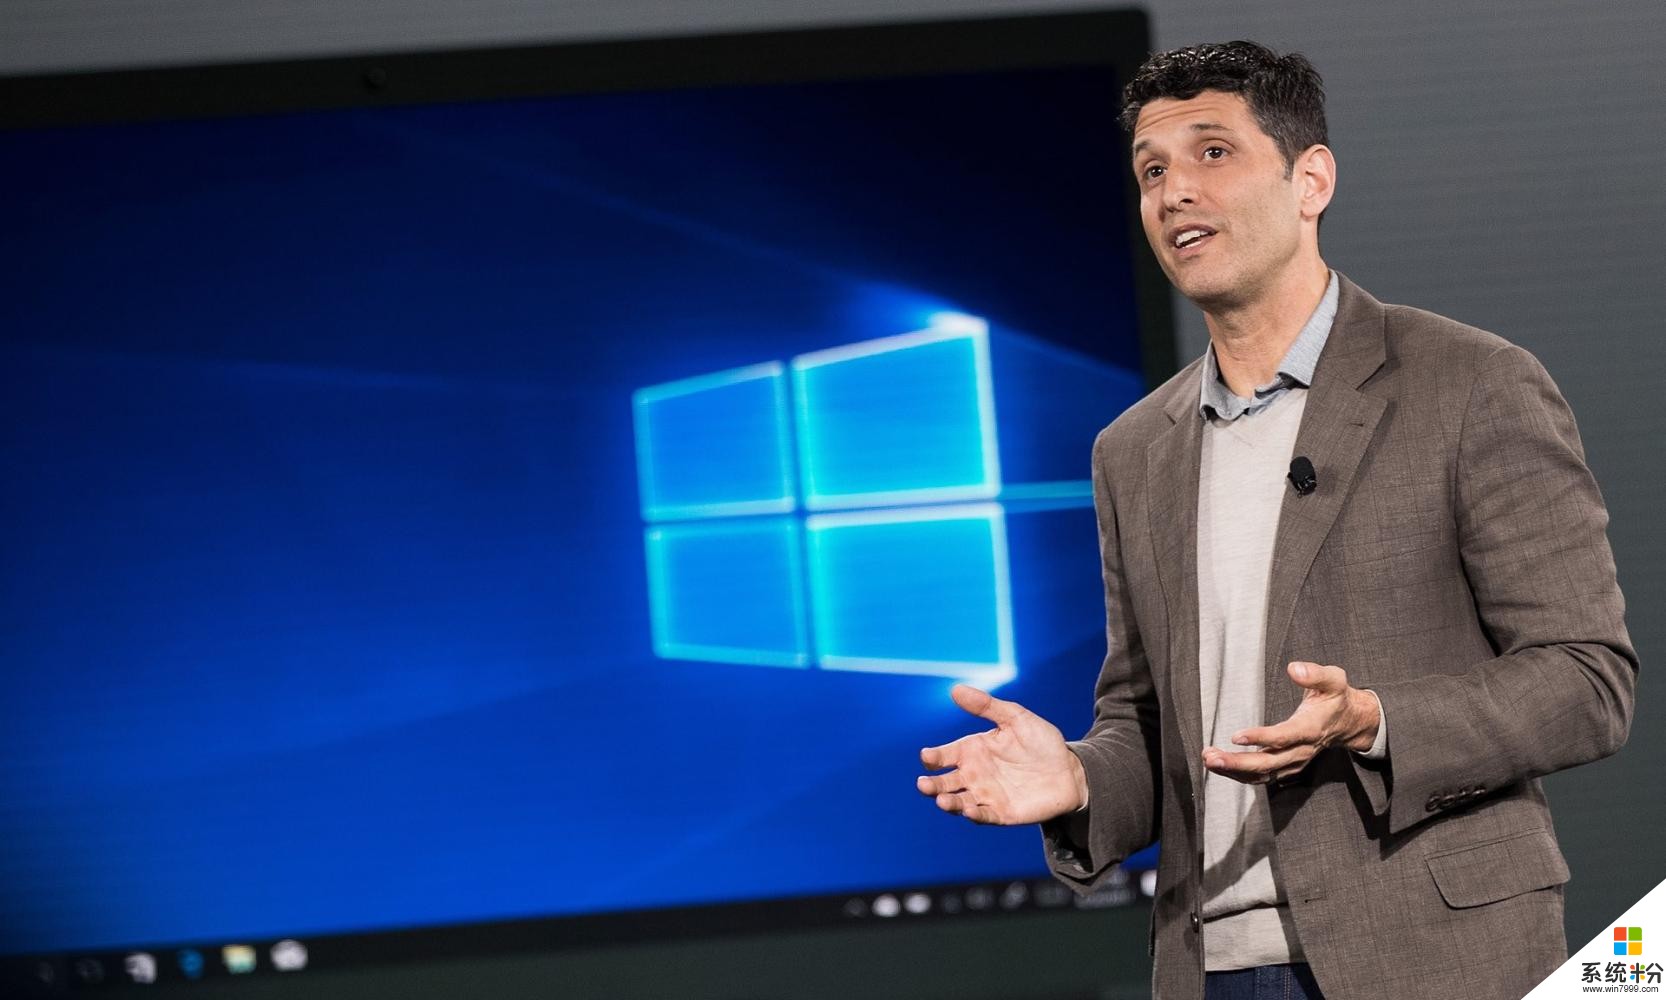 微软推出Surface笔记本电脑和Windows 10 S, 以竞争MacBook Pro(3)